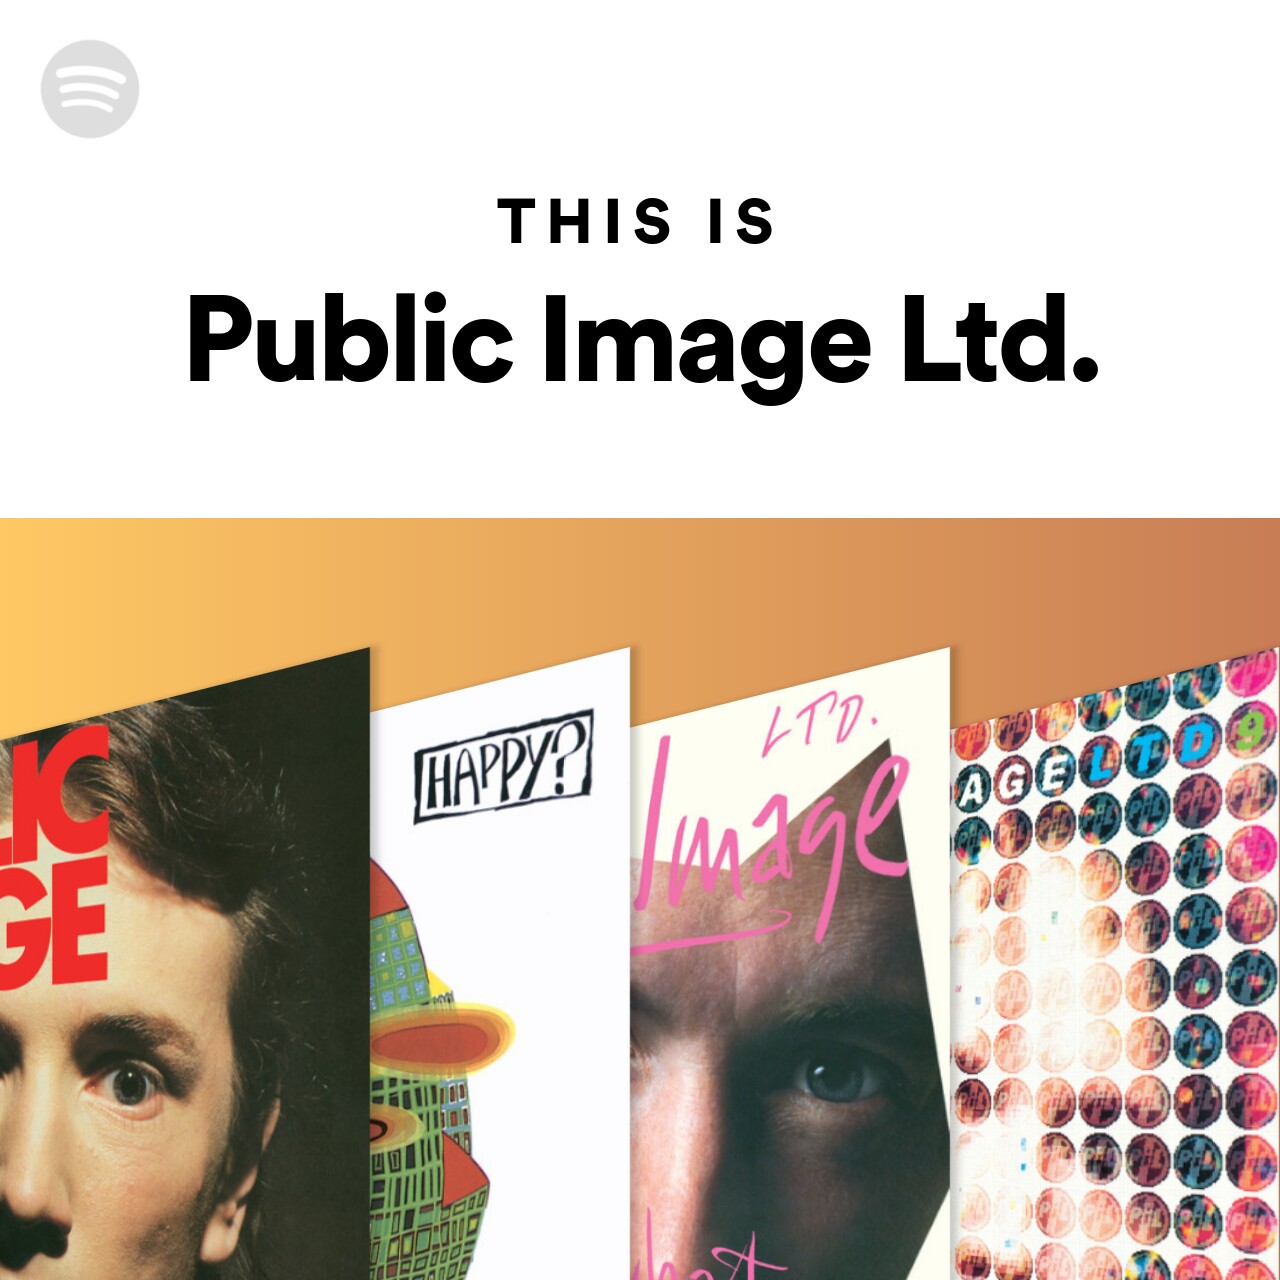 This Is Public Image Ltd.